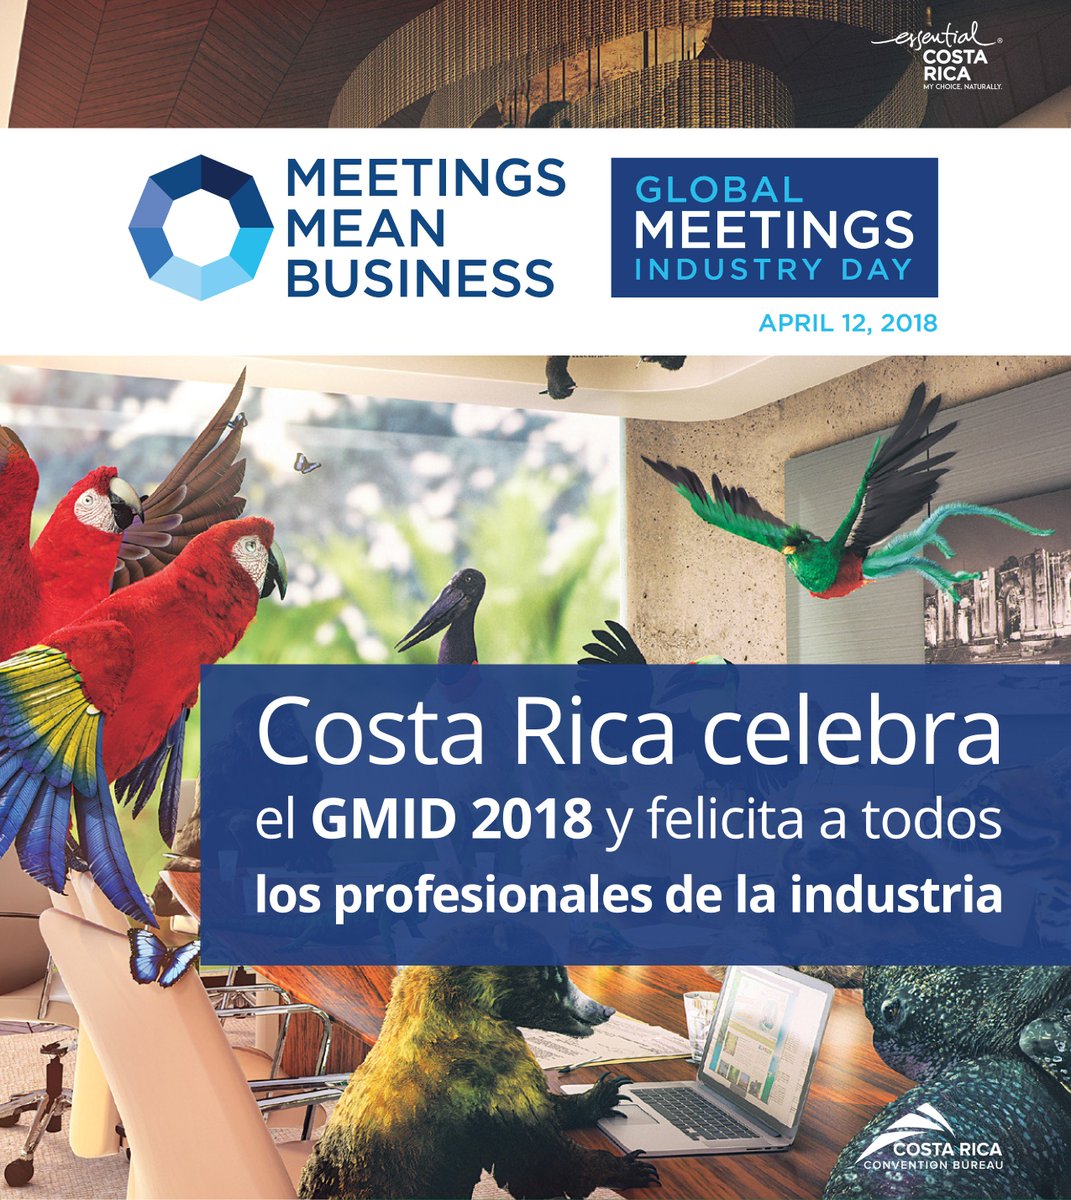 #CostaRica celebra el #GlobalMeetingsIndustryDay 2018 y felicita a todos los profesionales de la industria #MICE #CRCVB